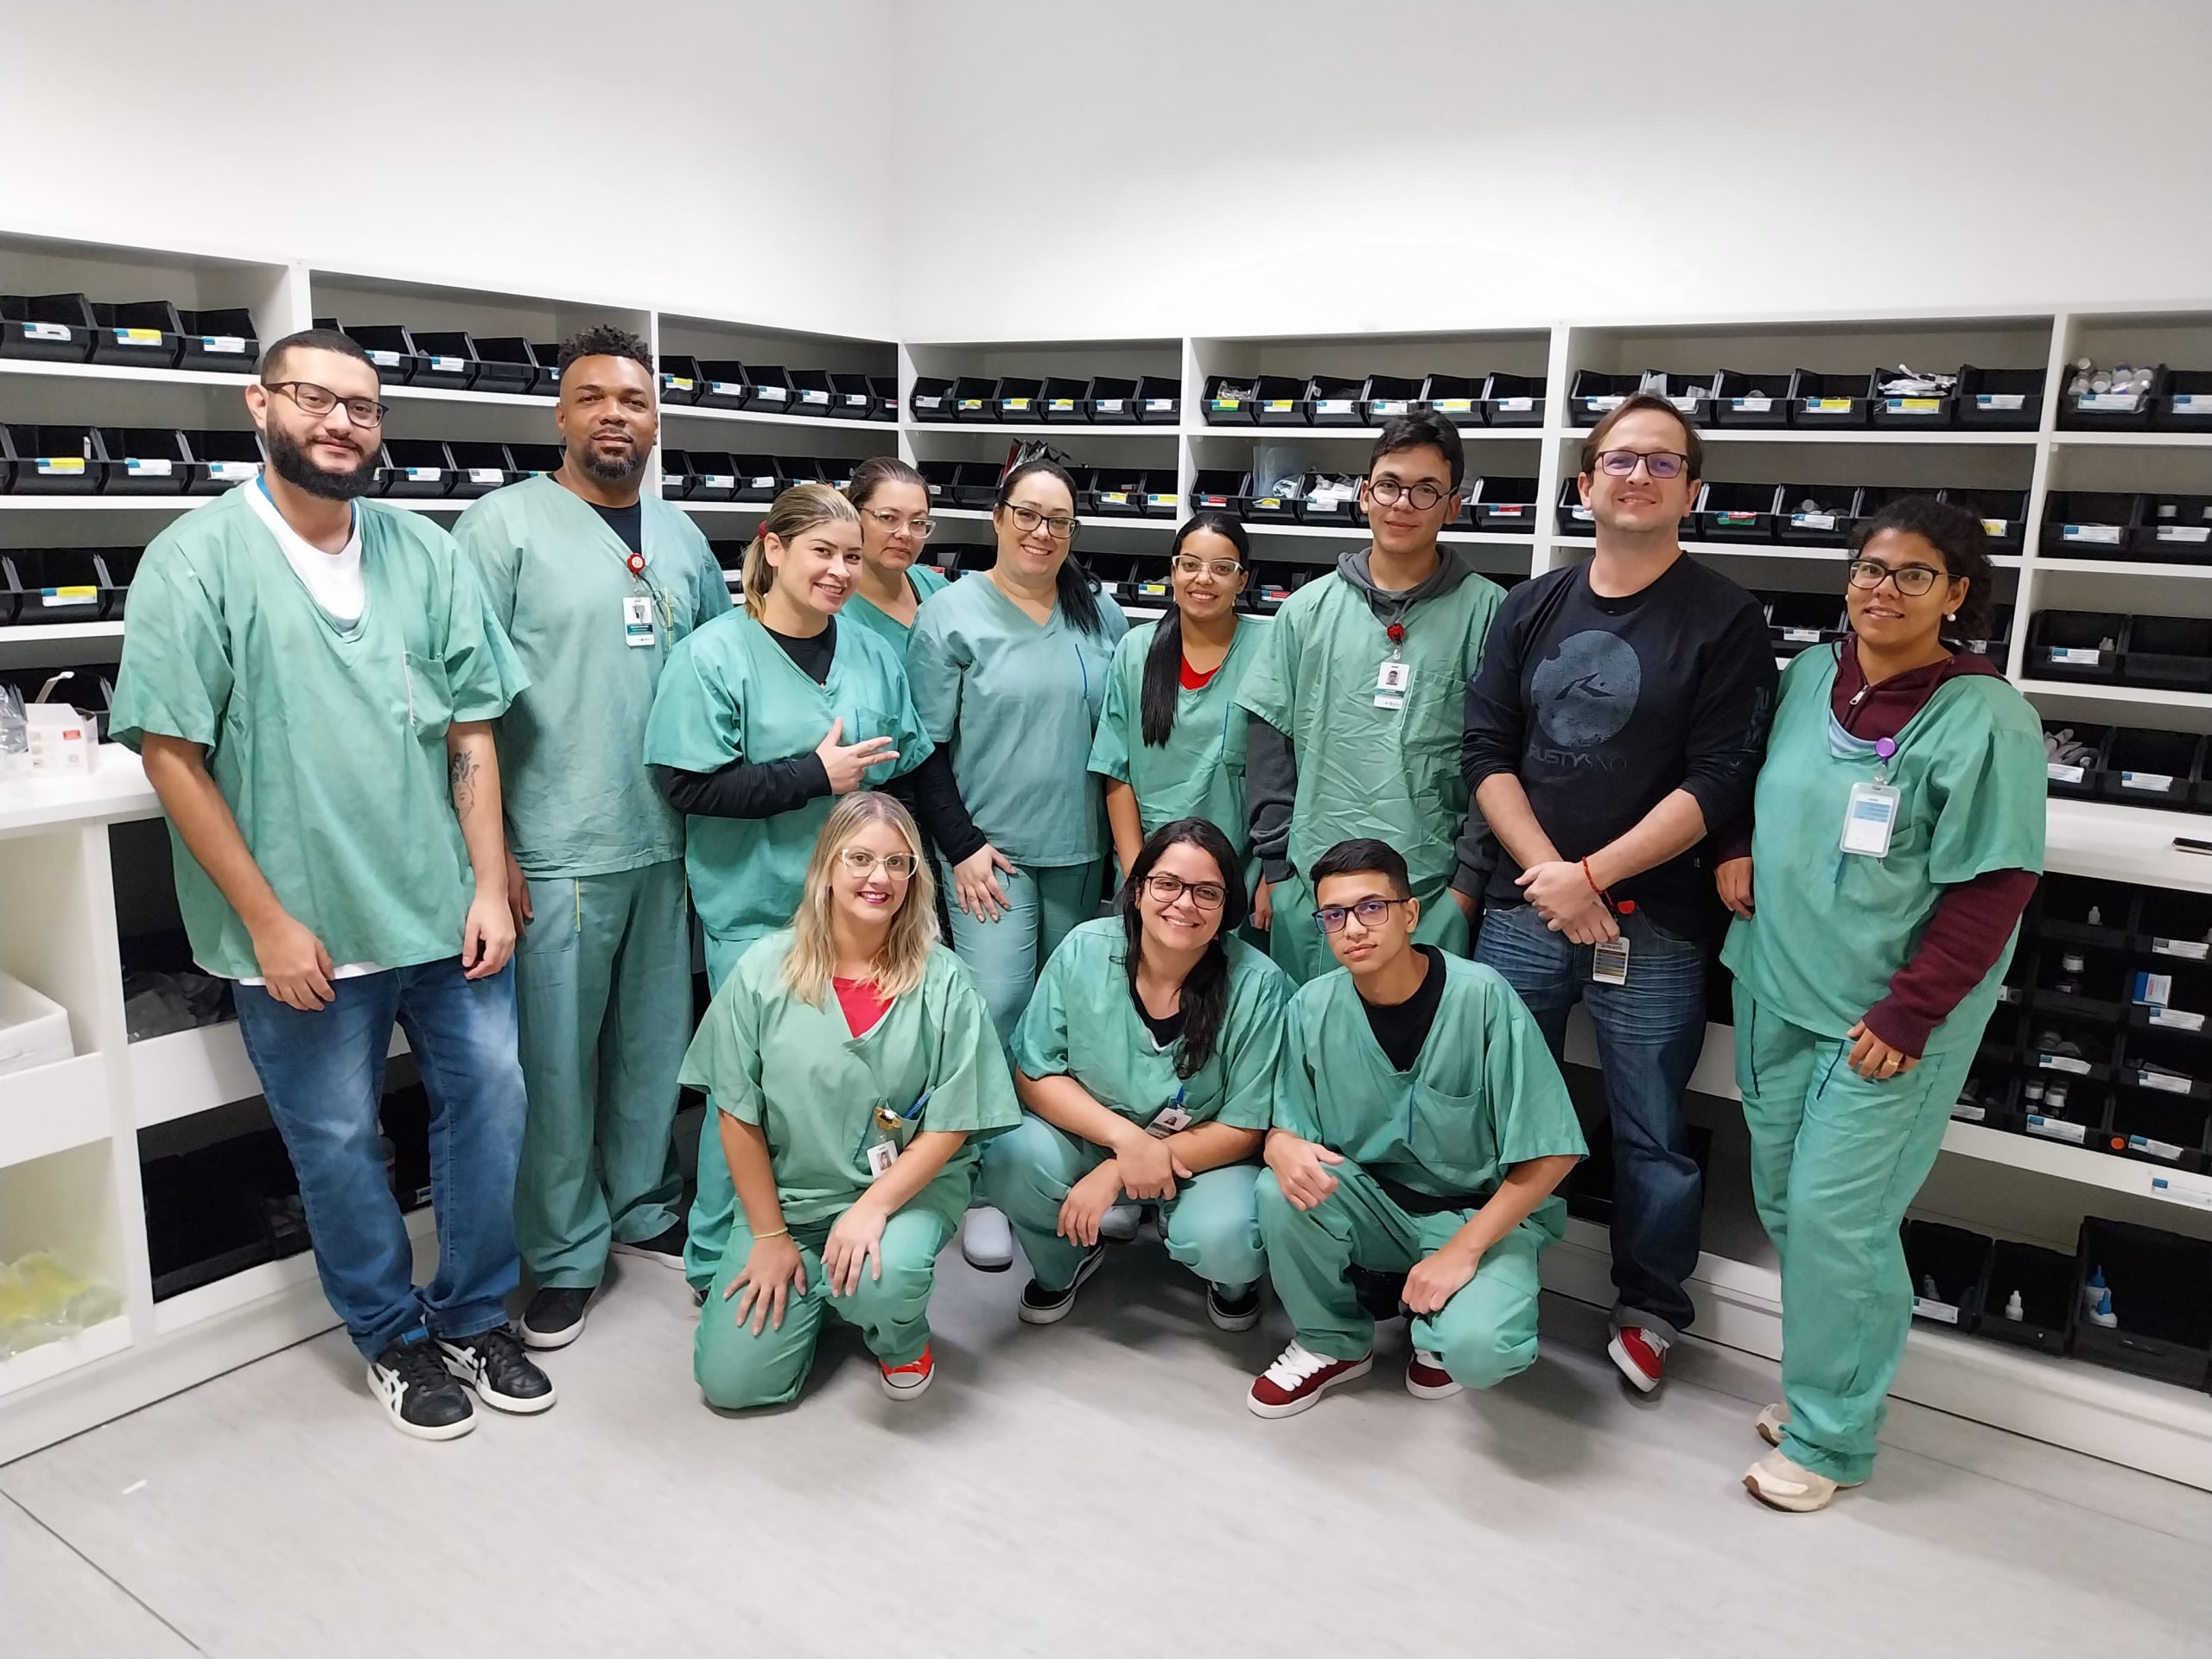 A equipe de farmacêuticos do Hospital Municipal da Brasilândia (HMB) promove a Orientação Farmacêutica de Alta Hospitalar. Unidade gerida pelo Instituto de Medicina, Estudos e Desenvolvimento (IMED).